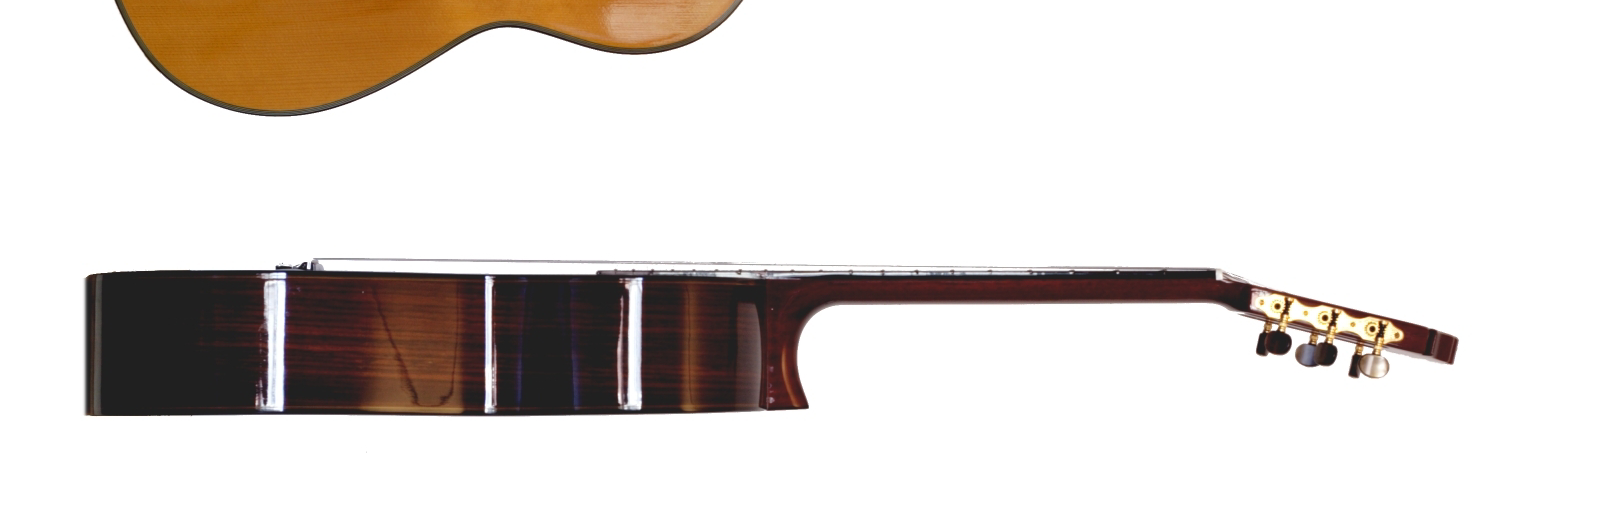 Berechnungsbeispiel in MECHANICA WF 5: Bestimmung der ungespannten Länge von der Stahlsaite einer Gitarre 1 Aufgabenstellung Die e-saite einer Konzertgitarre (Abb.